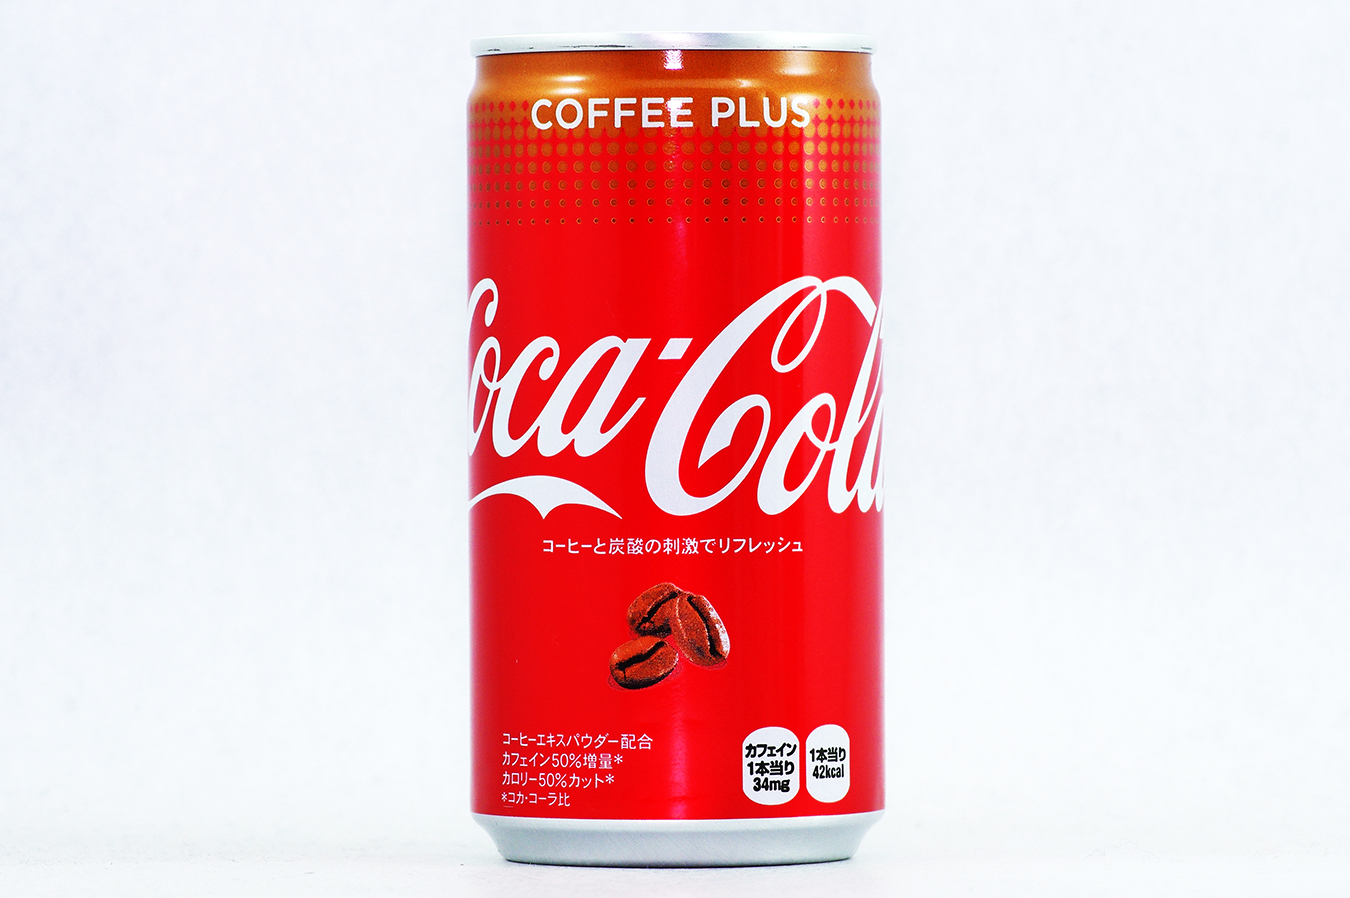 コカ・コーラ コーヒー プラス 2017年9月